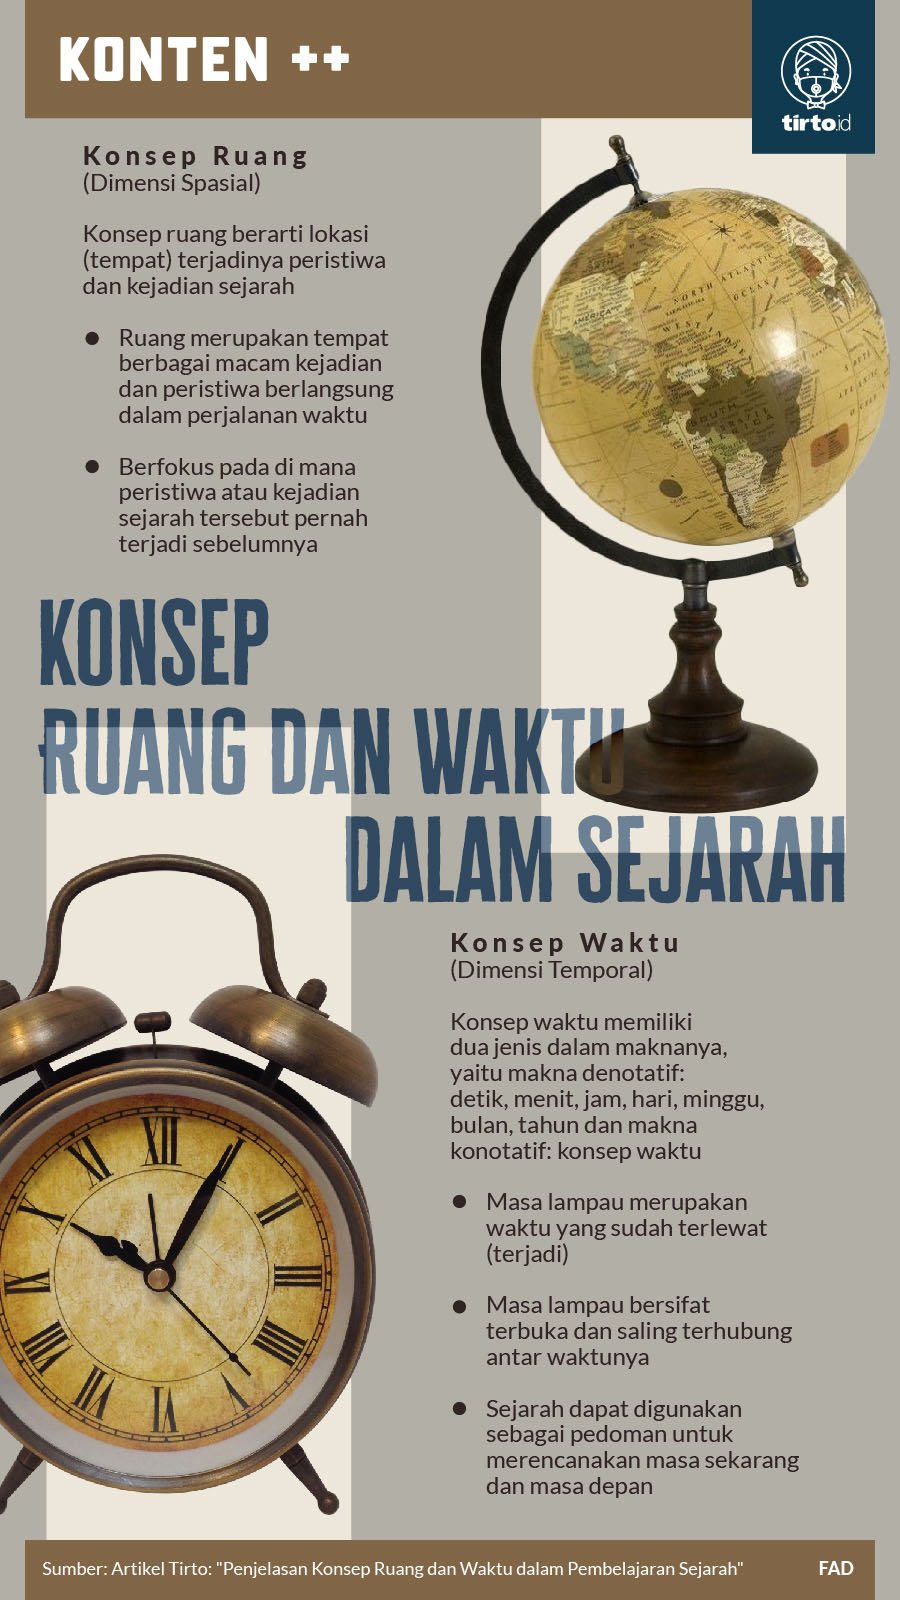 Asal usul dan perkembangan kehidupan awal masyarakat indonesia dapat dipahami melalui